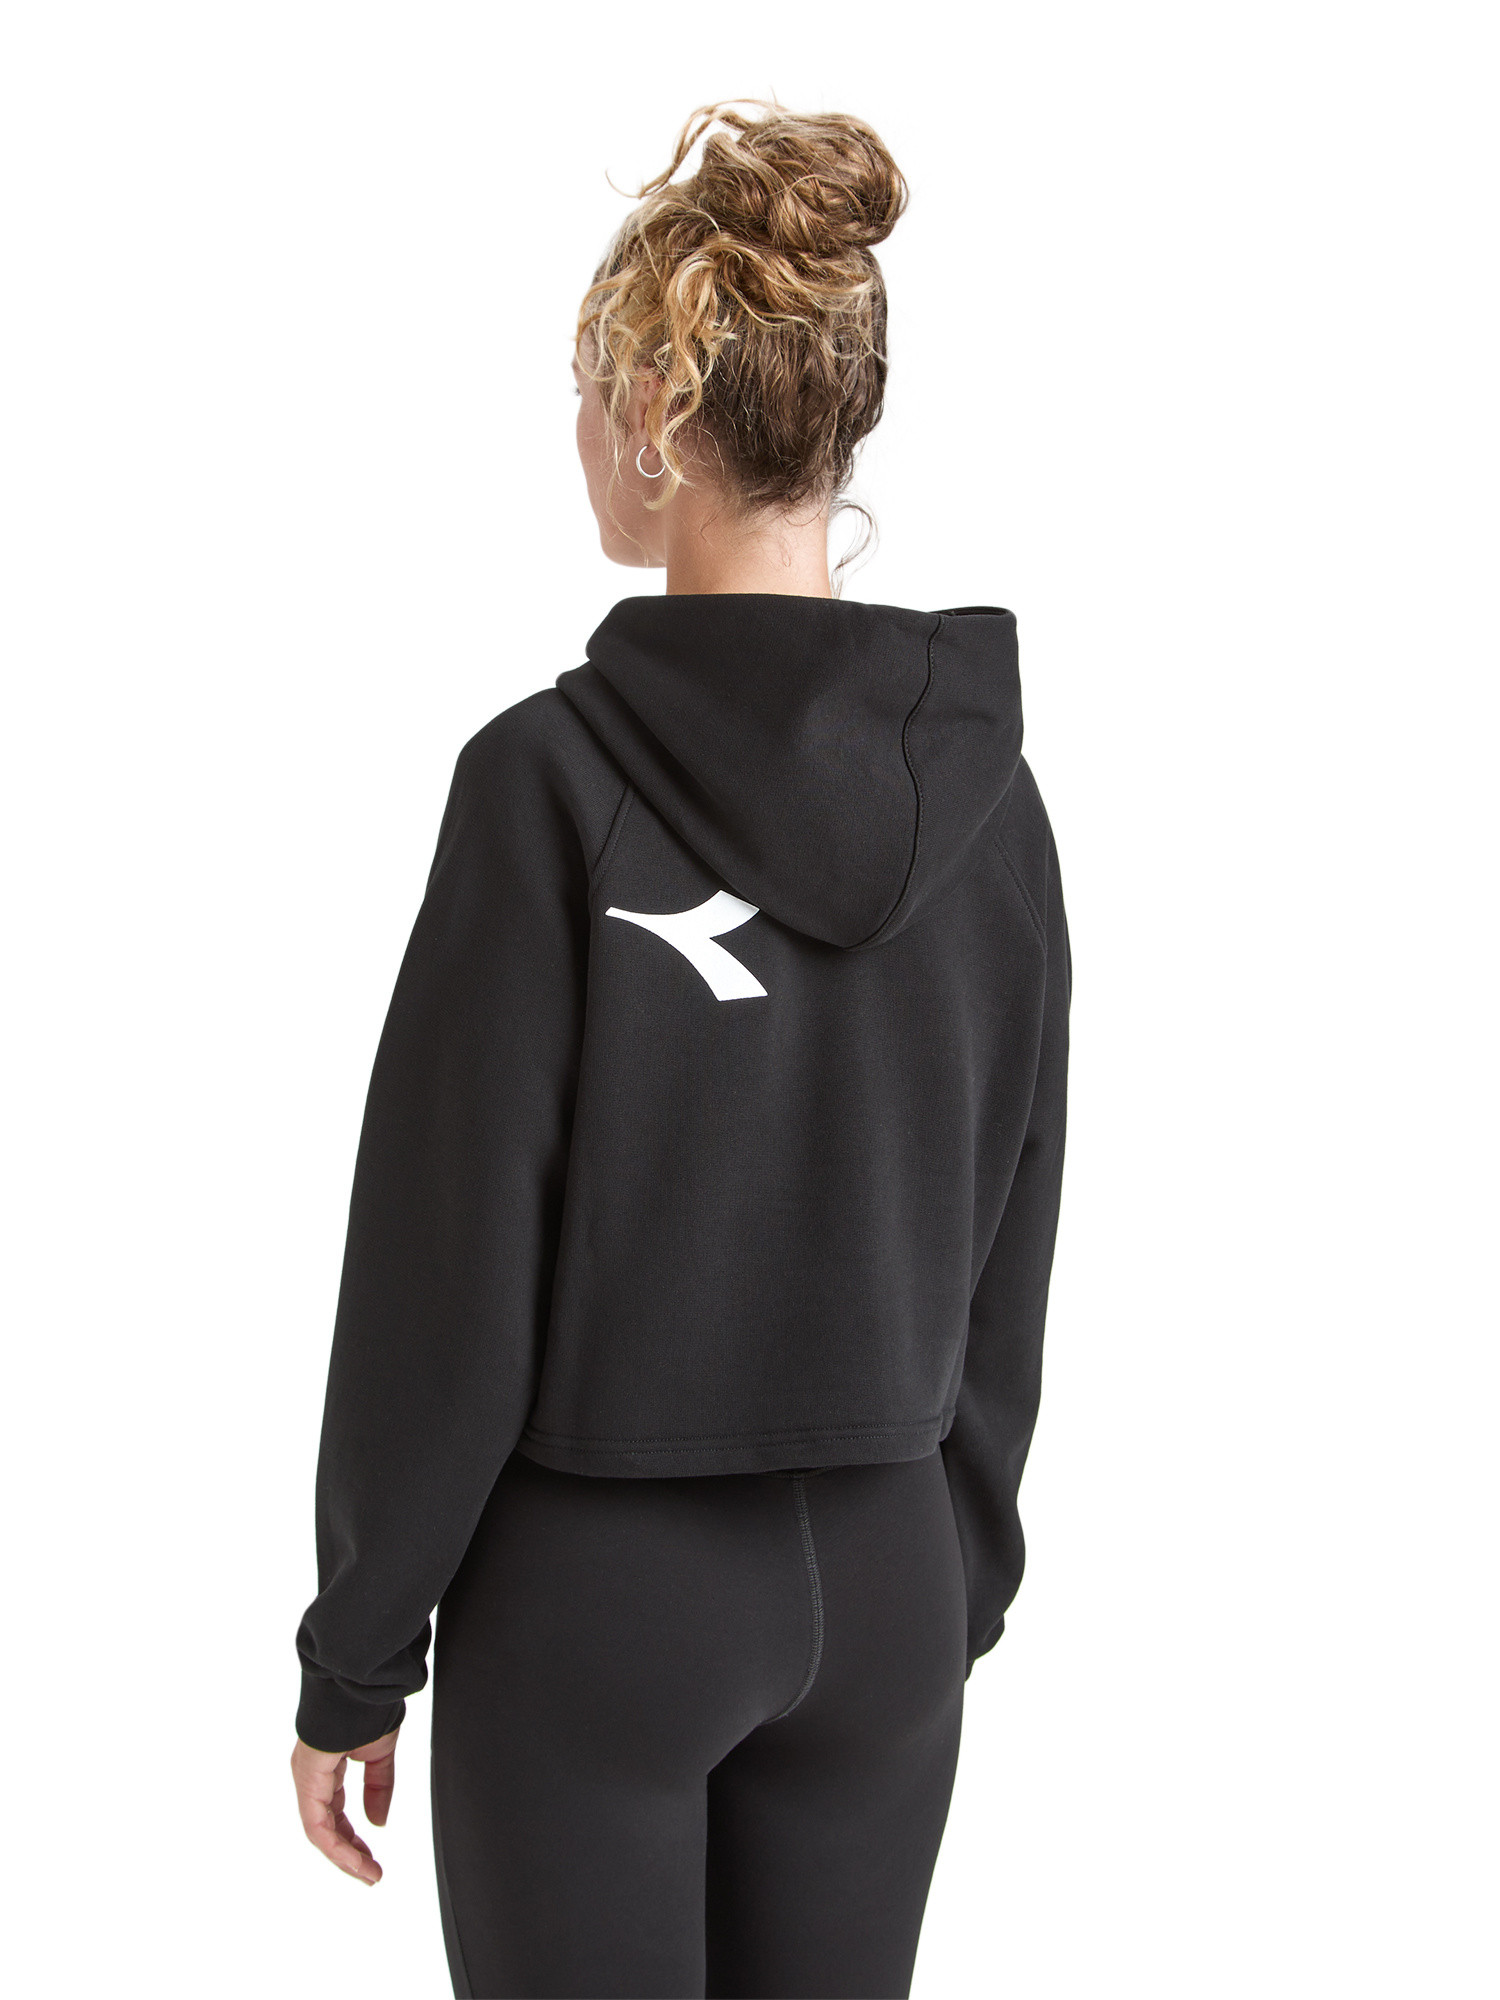 Diadora - Manifesto cotton hoodie, Black, large image number 3